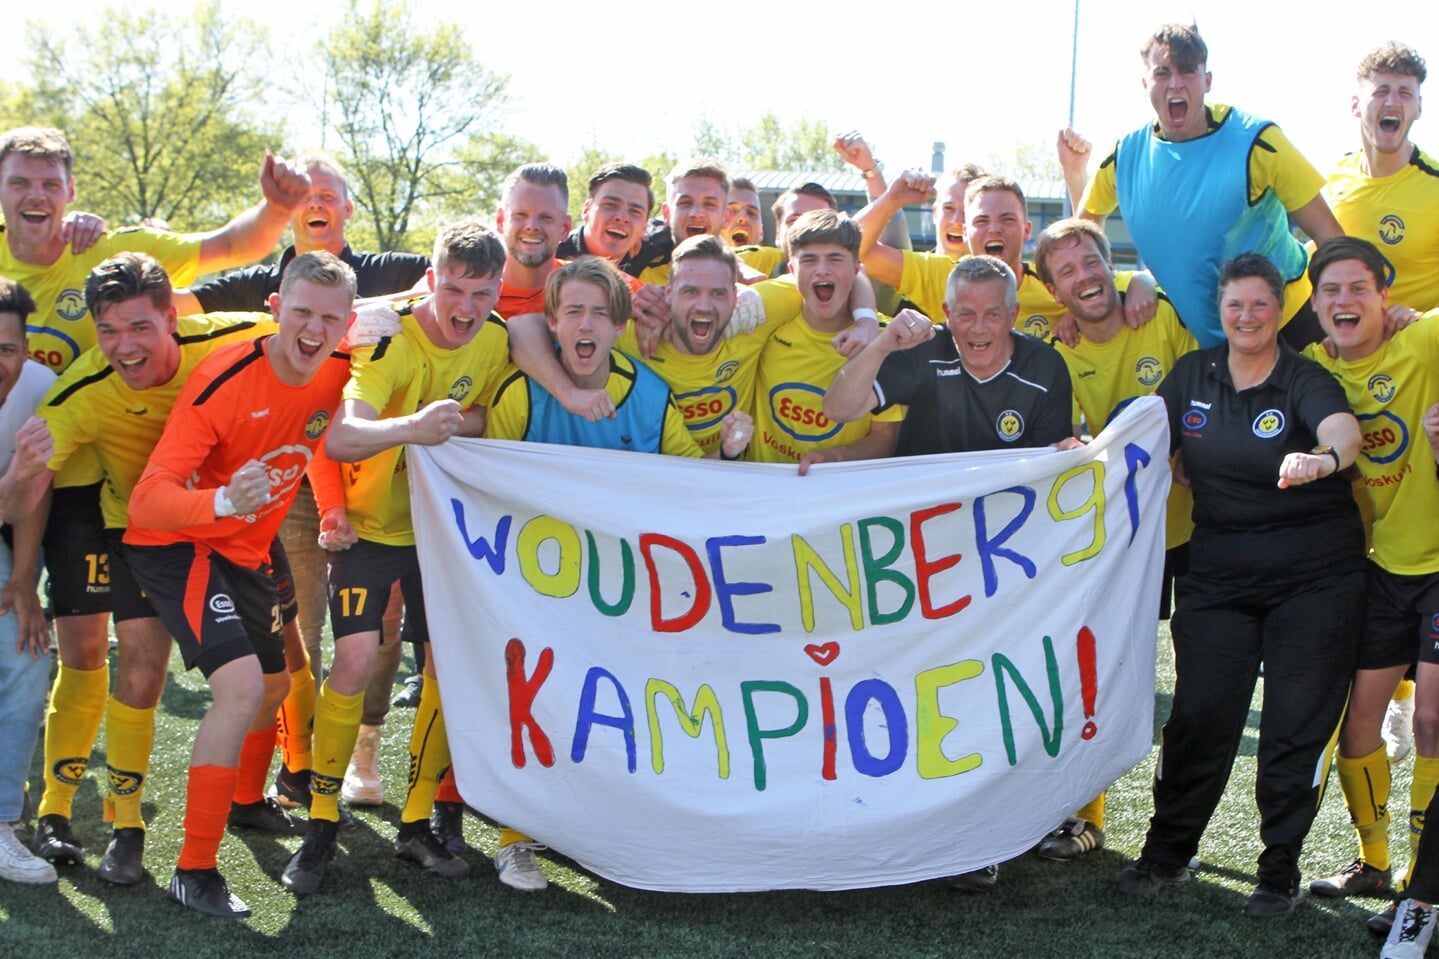 Woudenberg, Nieuwland, Kampioen